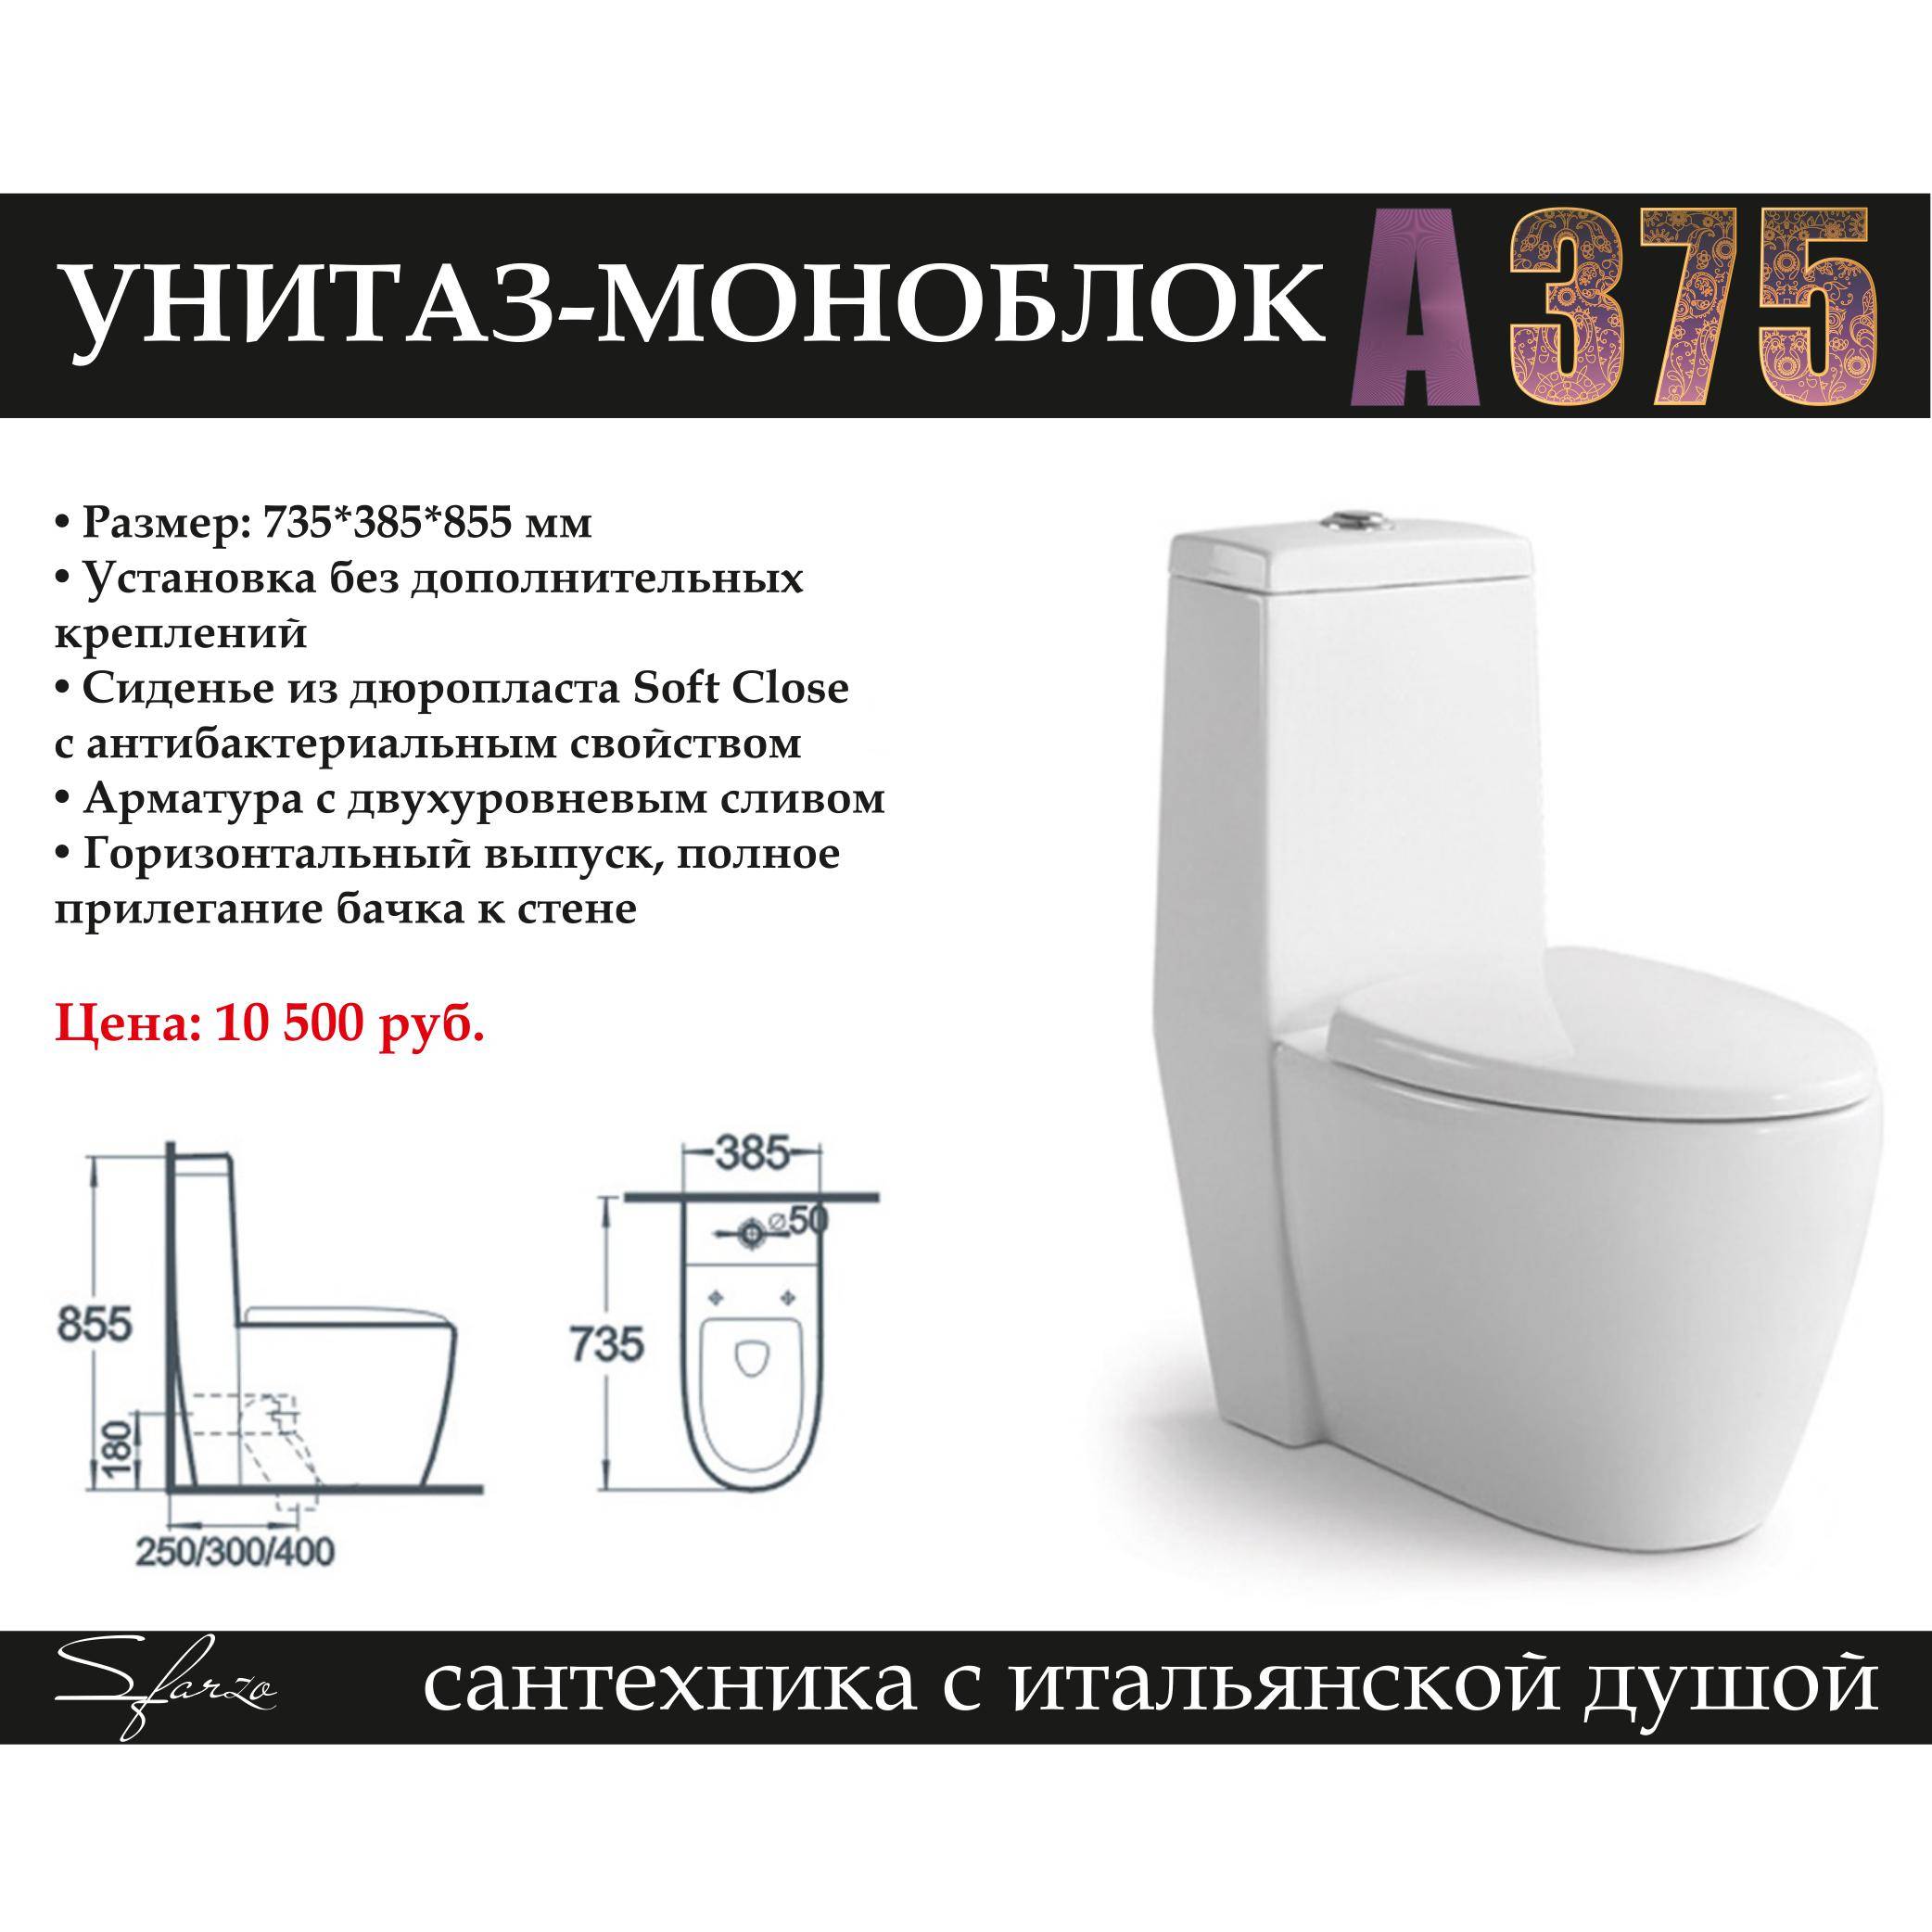 Все в одном: как выбрать моноблок для офиса или дома | ichip.ru